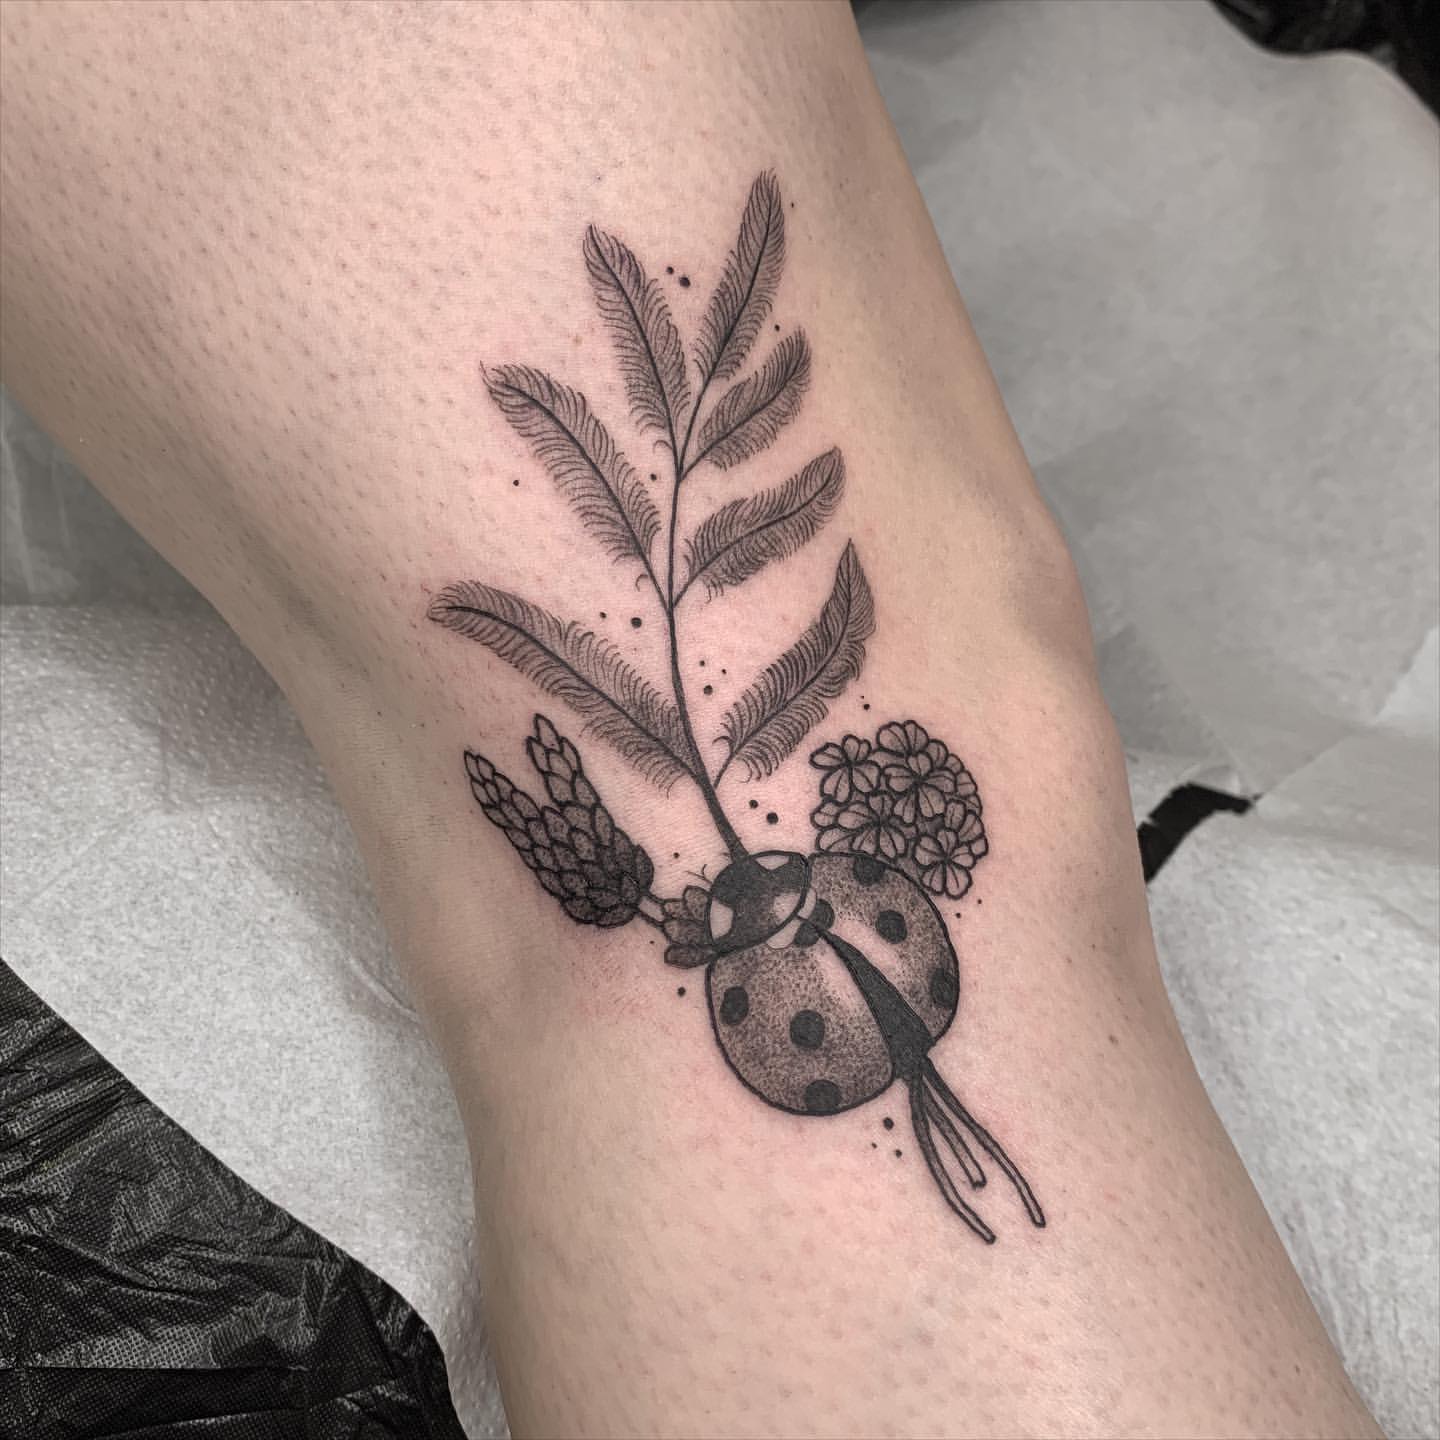 Ladybug Tattoo Ideas 2